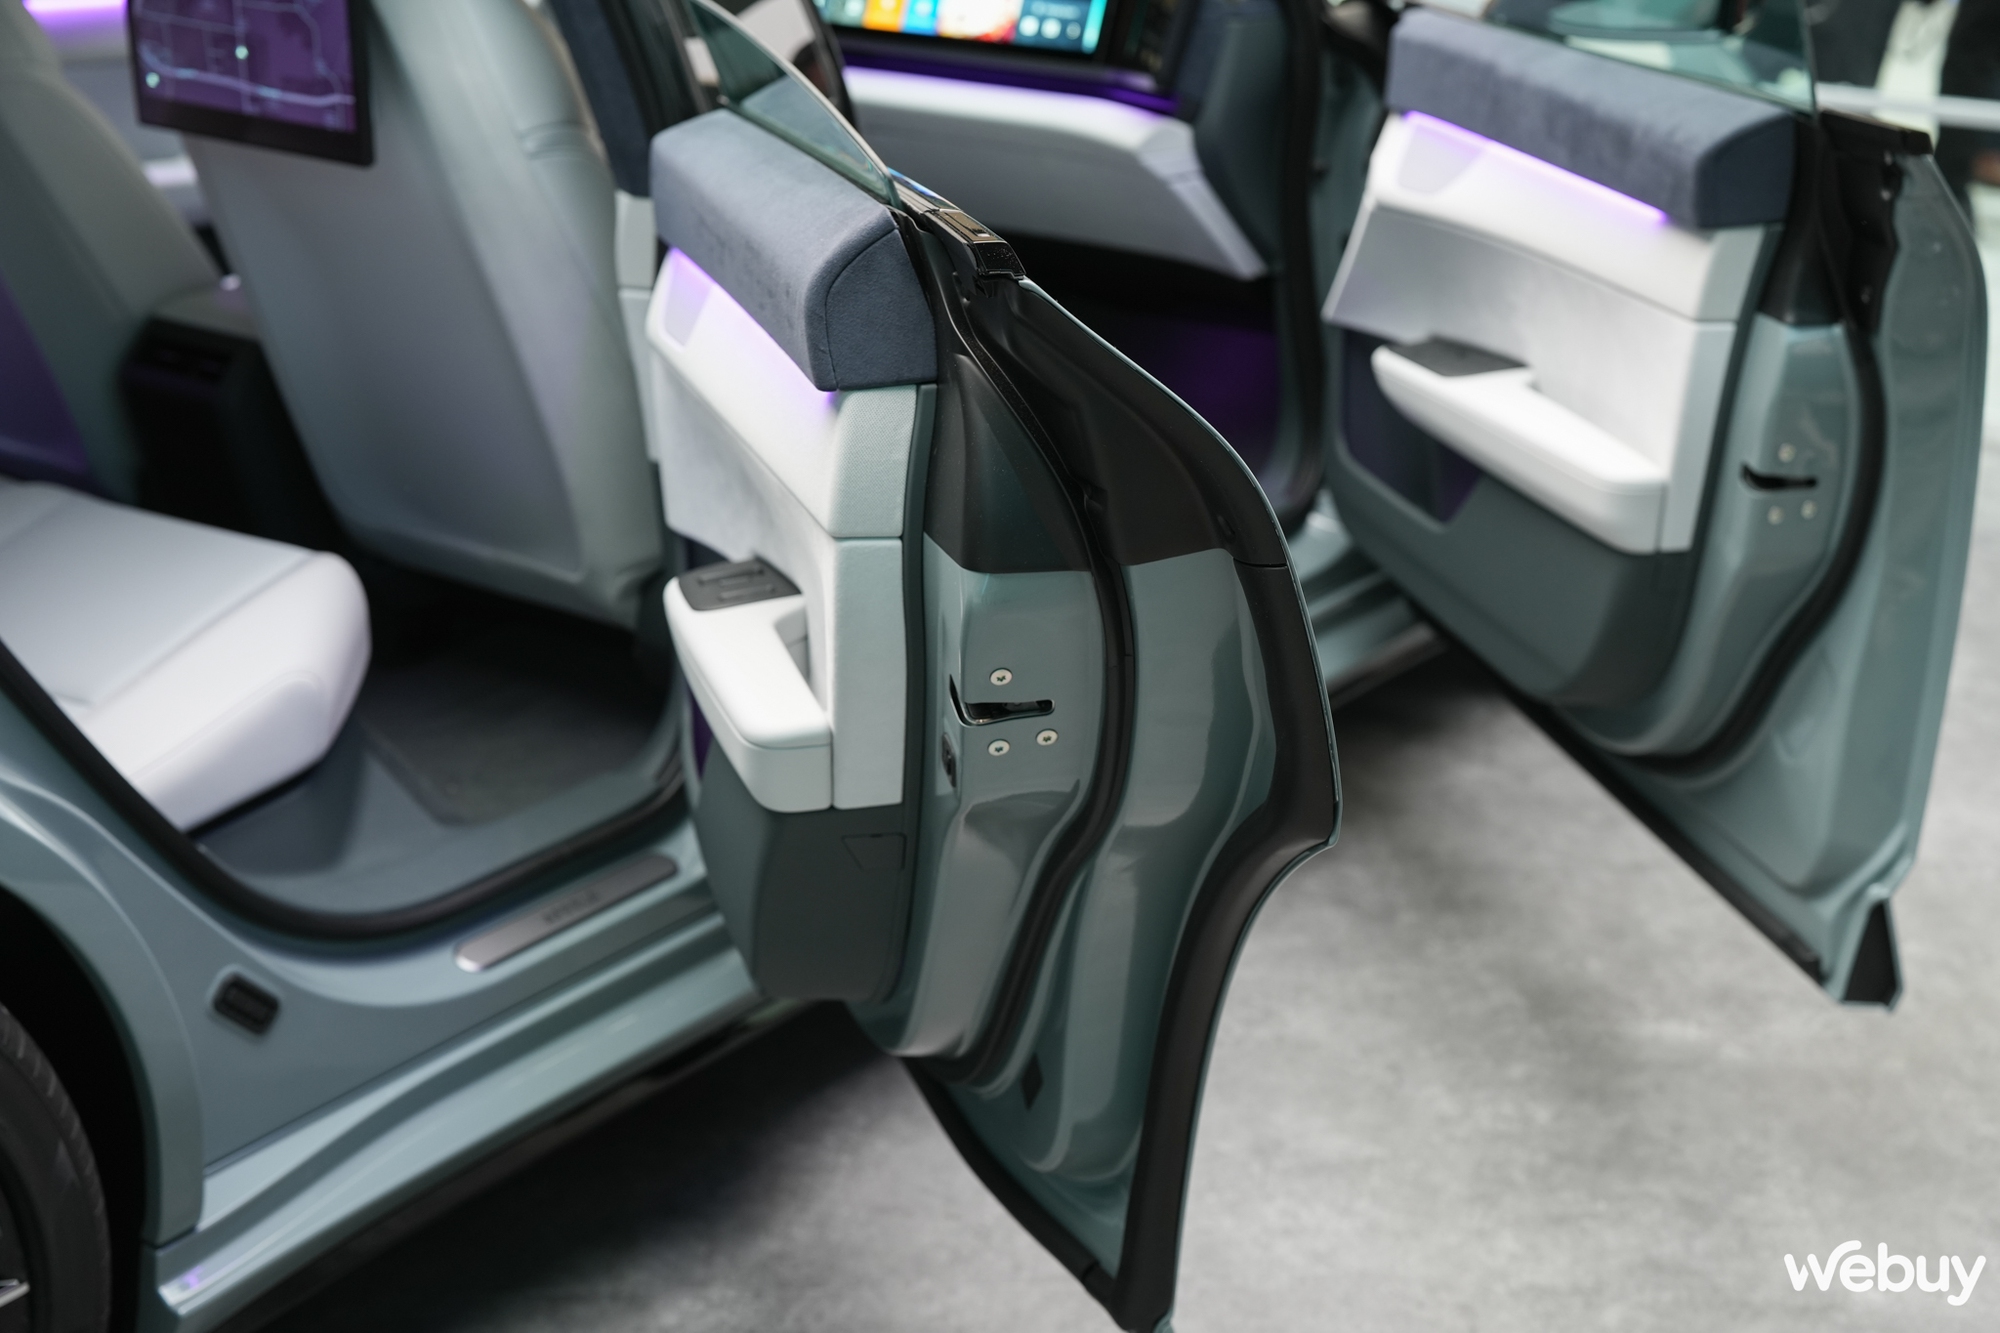 Cận cảnh ô tô điện mới của Sony và Honda: Trang bị AI, có thể điều khiển bằng tay cầm PS5, tích hợp cả Unreal Engine 5- Ảnh 12.